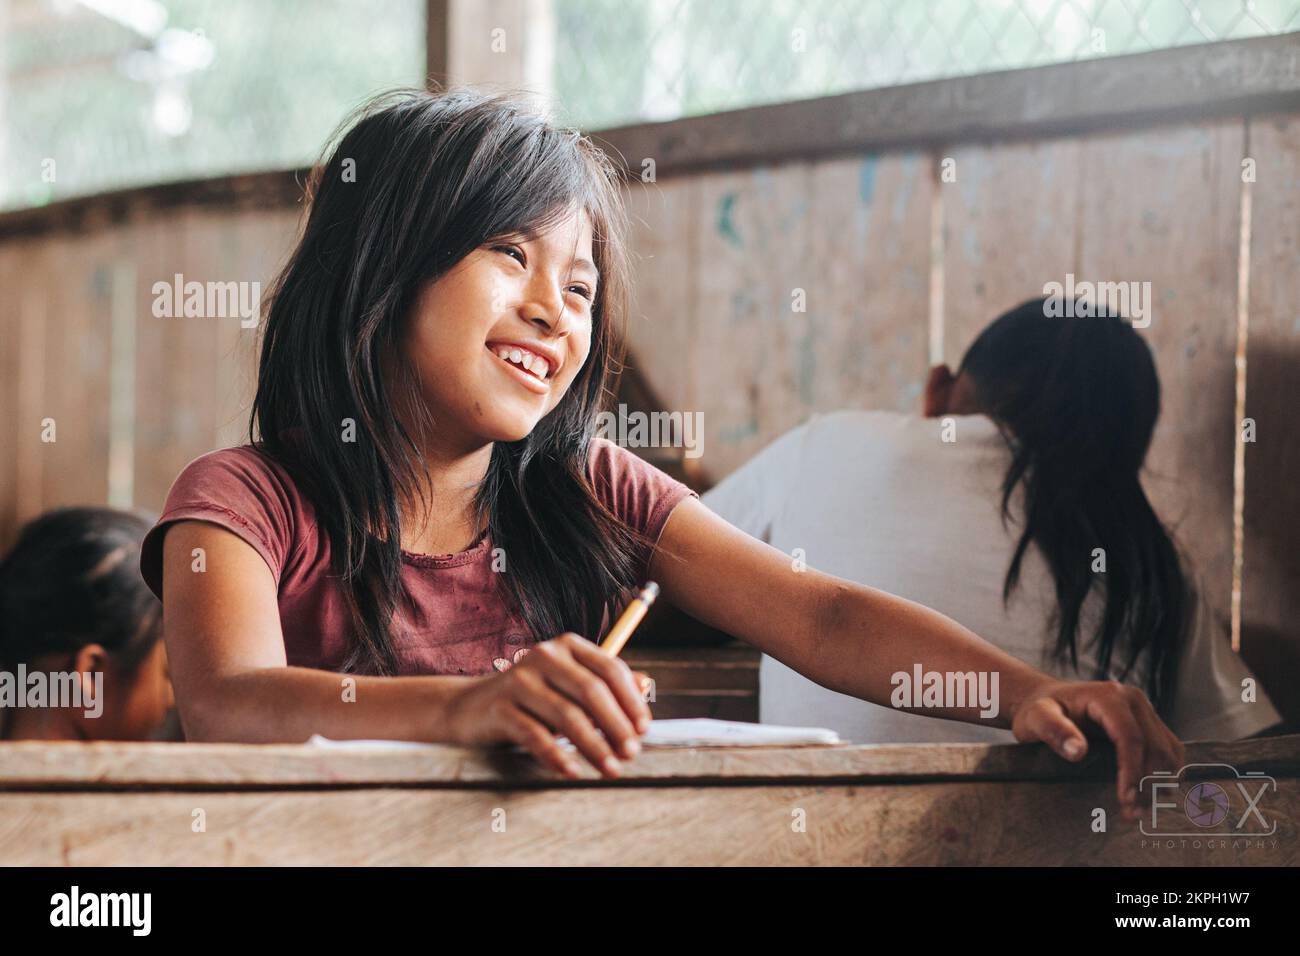 Indigenous Children in School Stock Photo